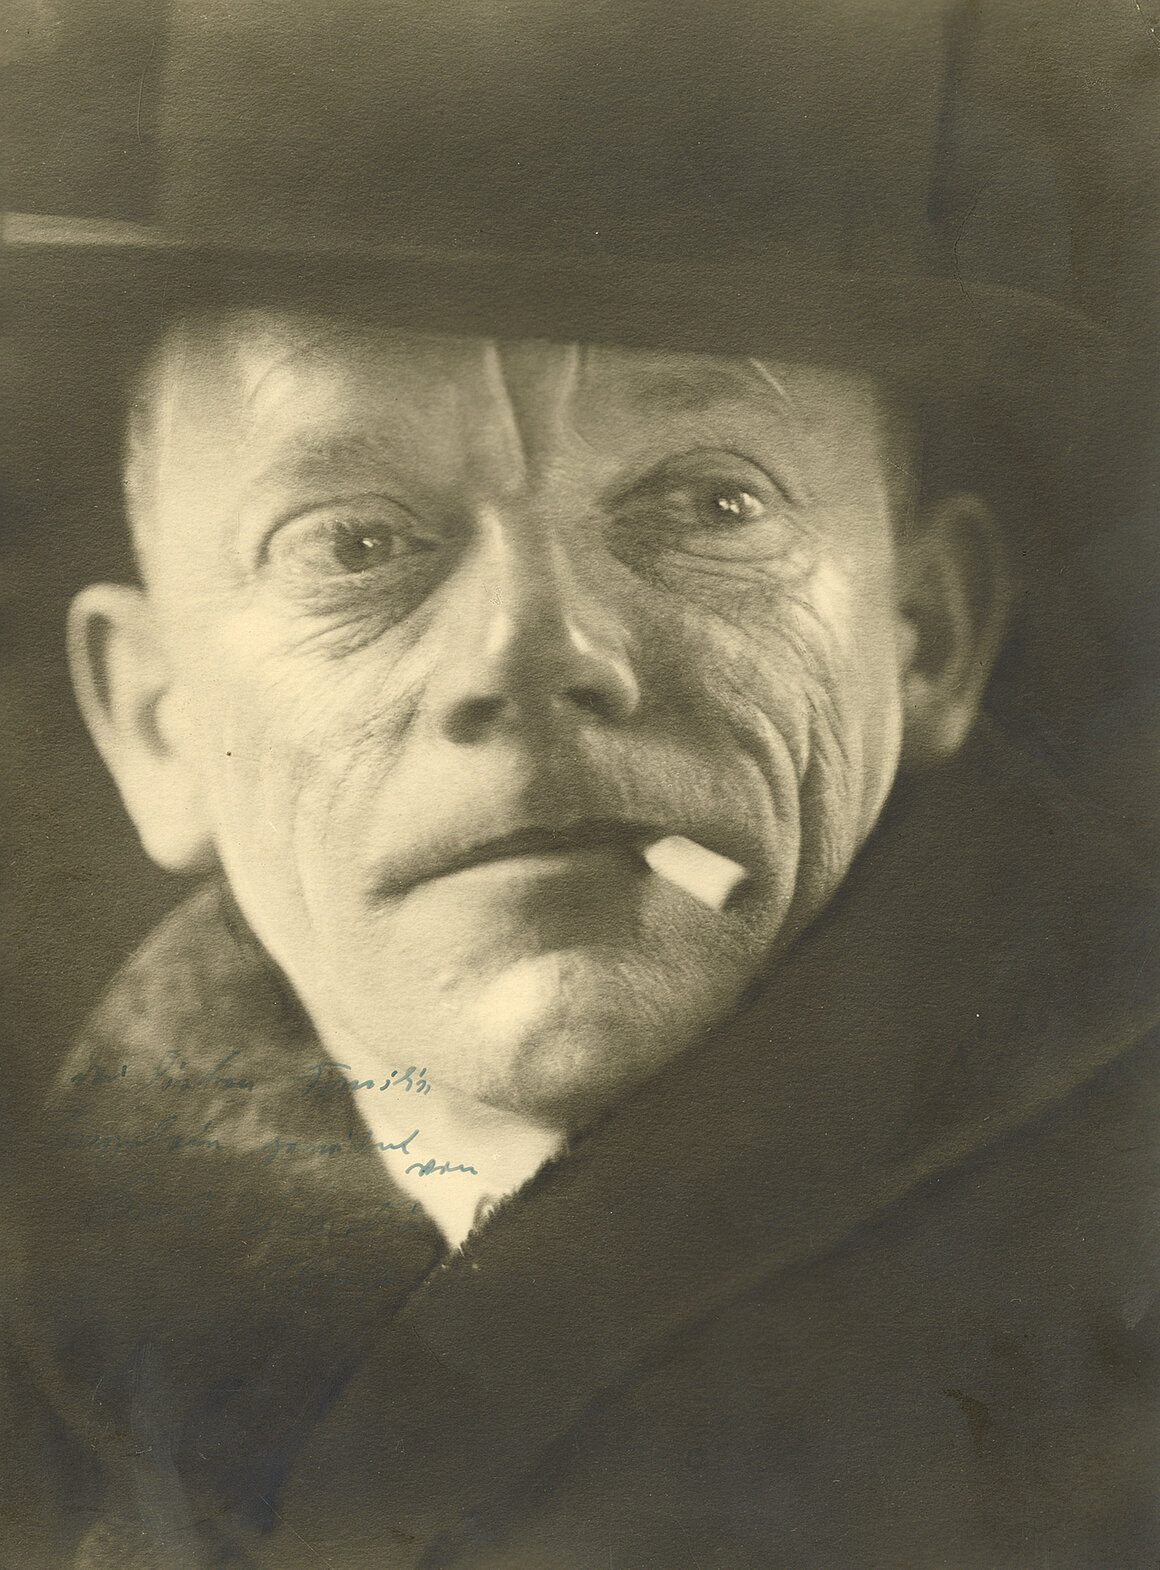 Porträt von Karl Valentin, 1944, Foto älter